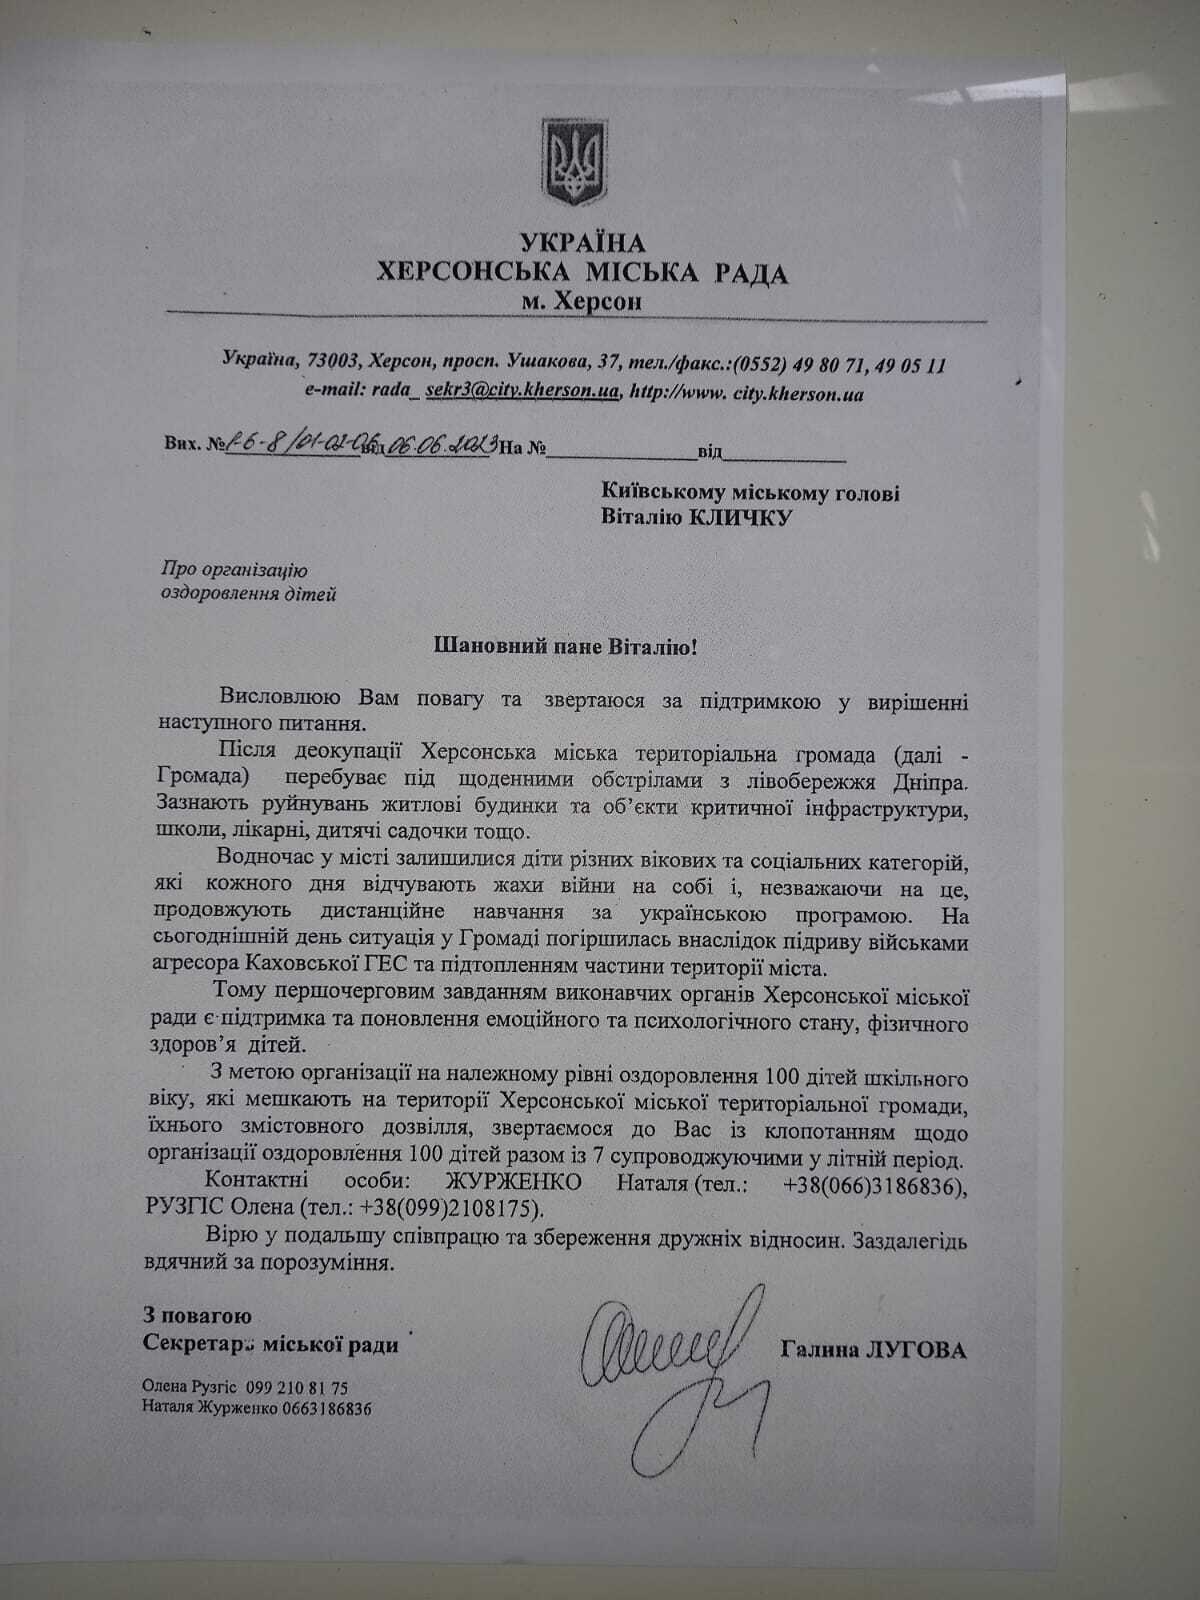 "Зупиніться, так не можна": Галина Лугова прокоментувала своє звільнення з посади секретаря міськради Херсона